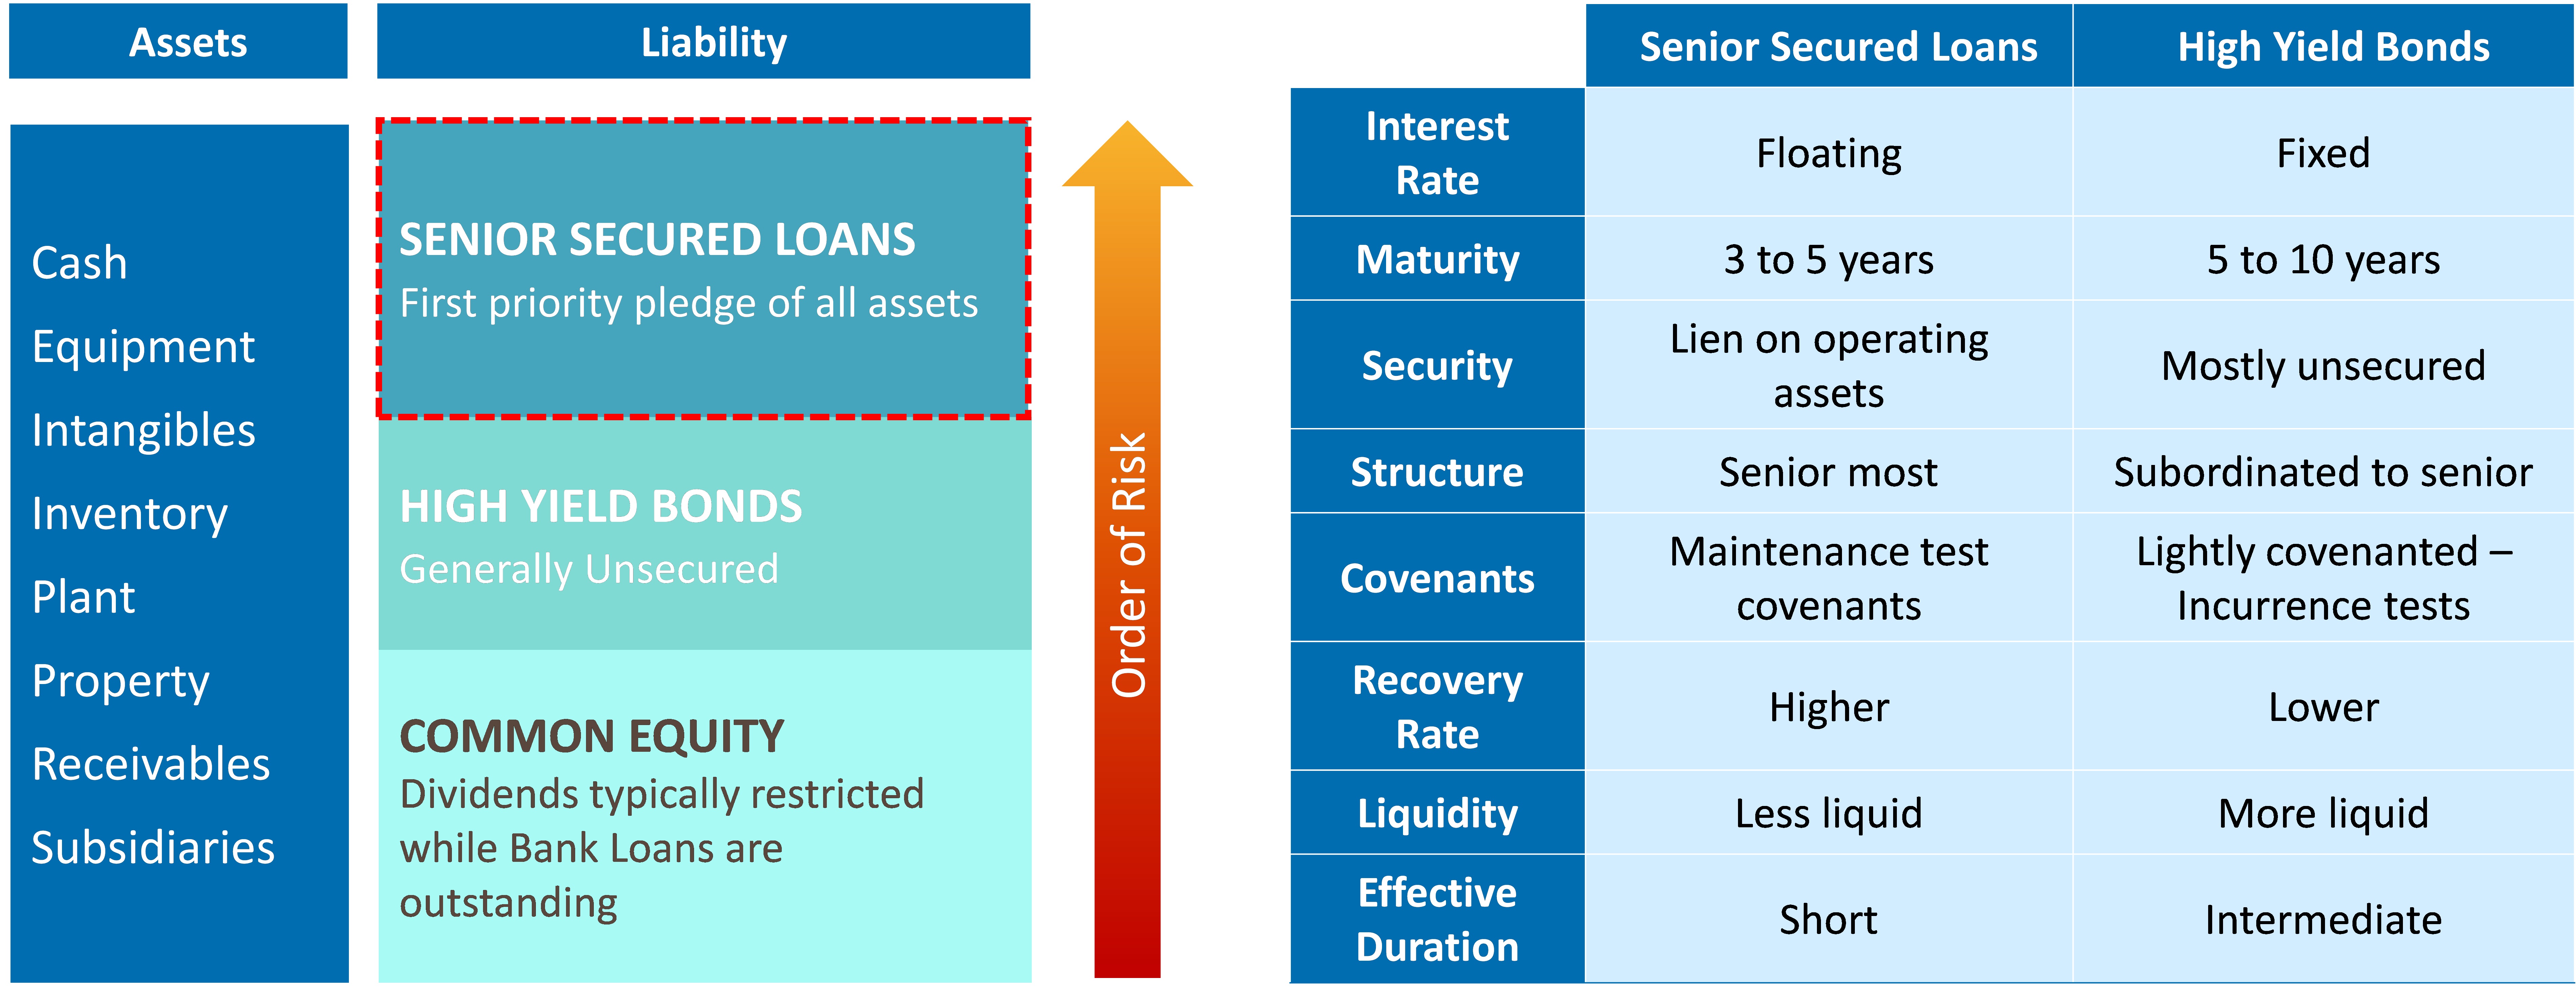 Senior Secured Loans